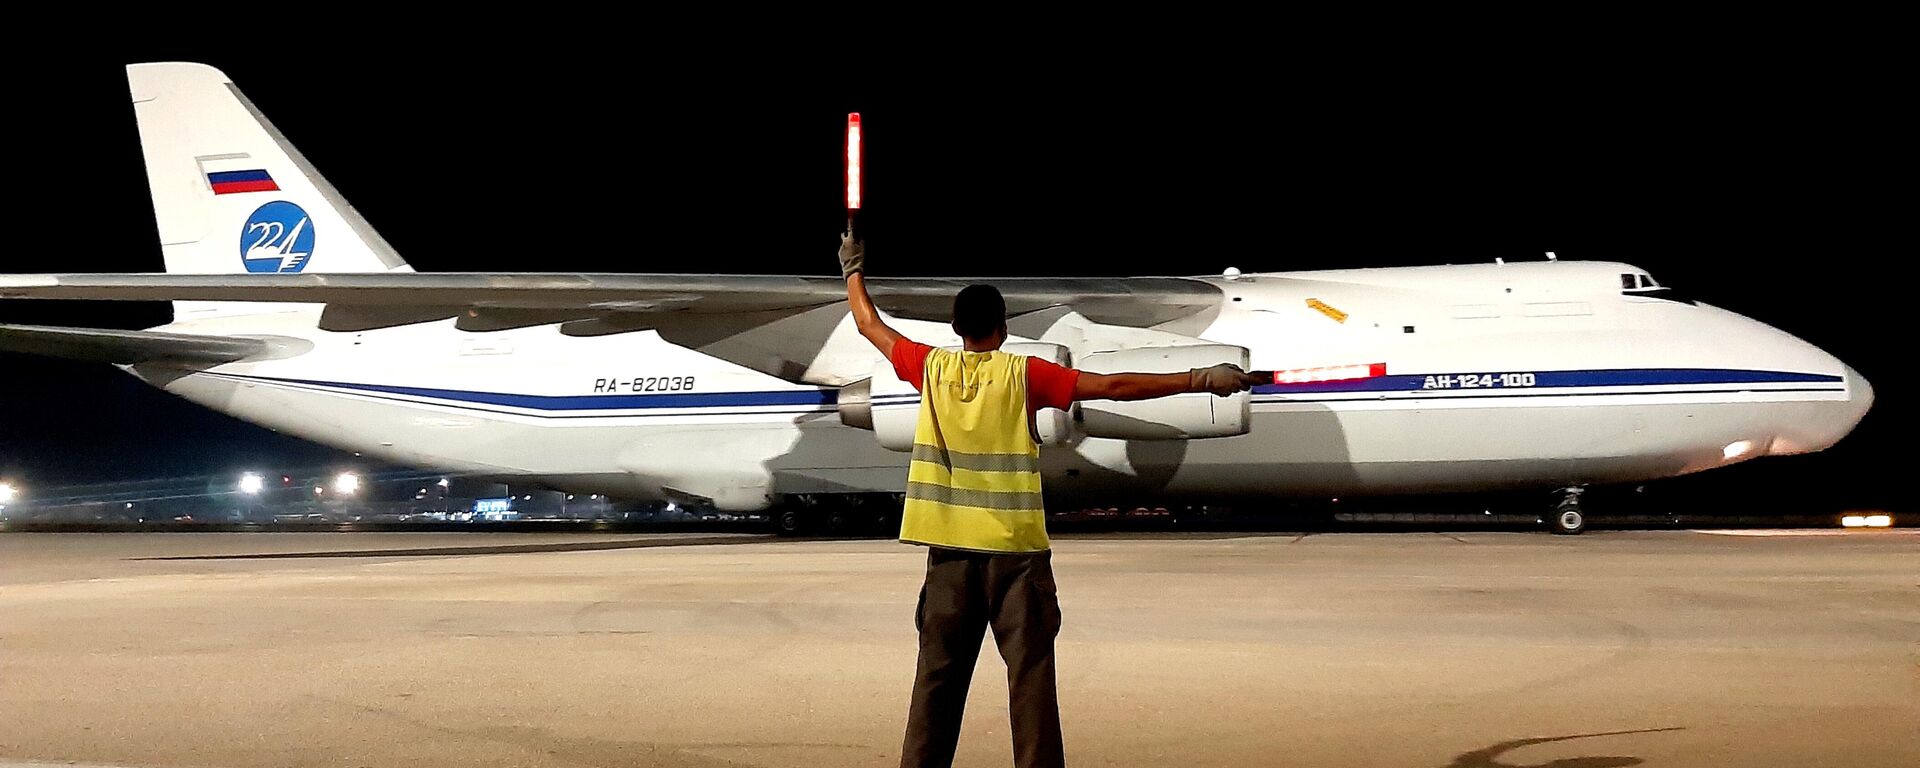 Aviones rusos An-124 Ruslan arriban a Cuba con cargamento de ayuda humanitaria - Sputnik Mundo, 1920, 26.07.2021